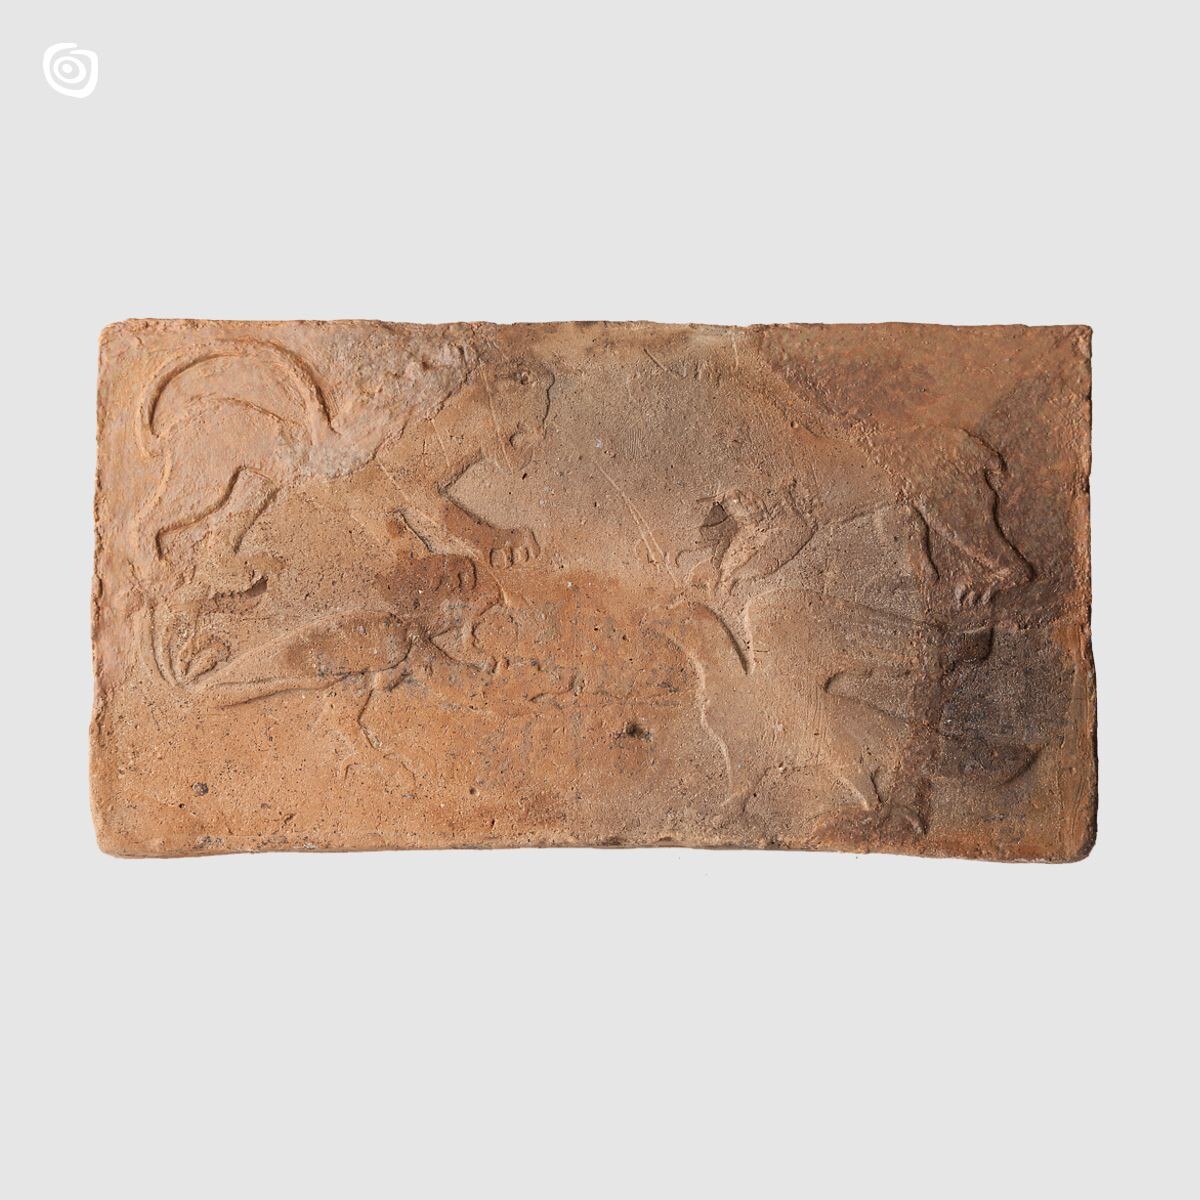 Płytka ceramiczna z lwem, smokiem, orłem oraz niedźwiedziem, Gniezno, wczesne średniowiecze